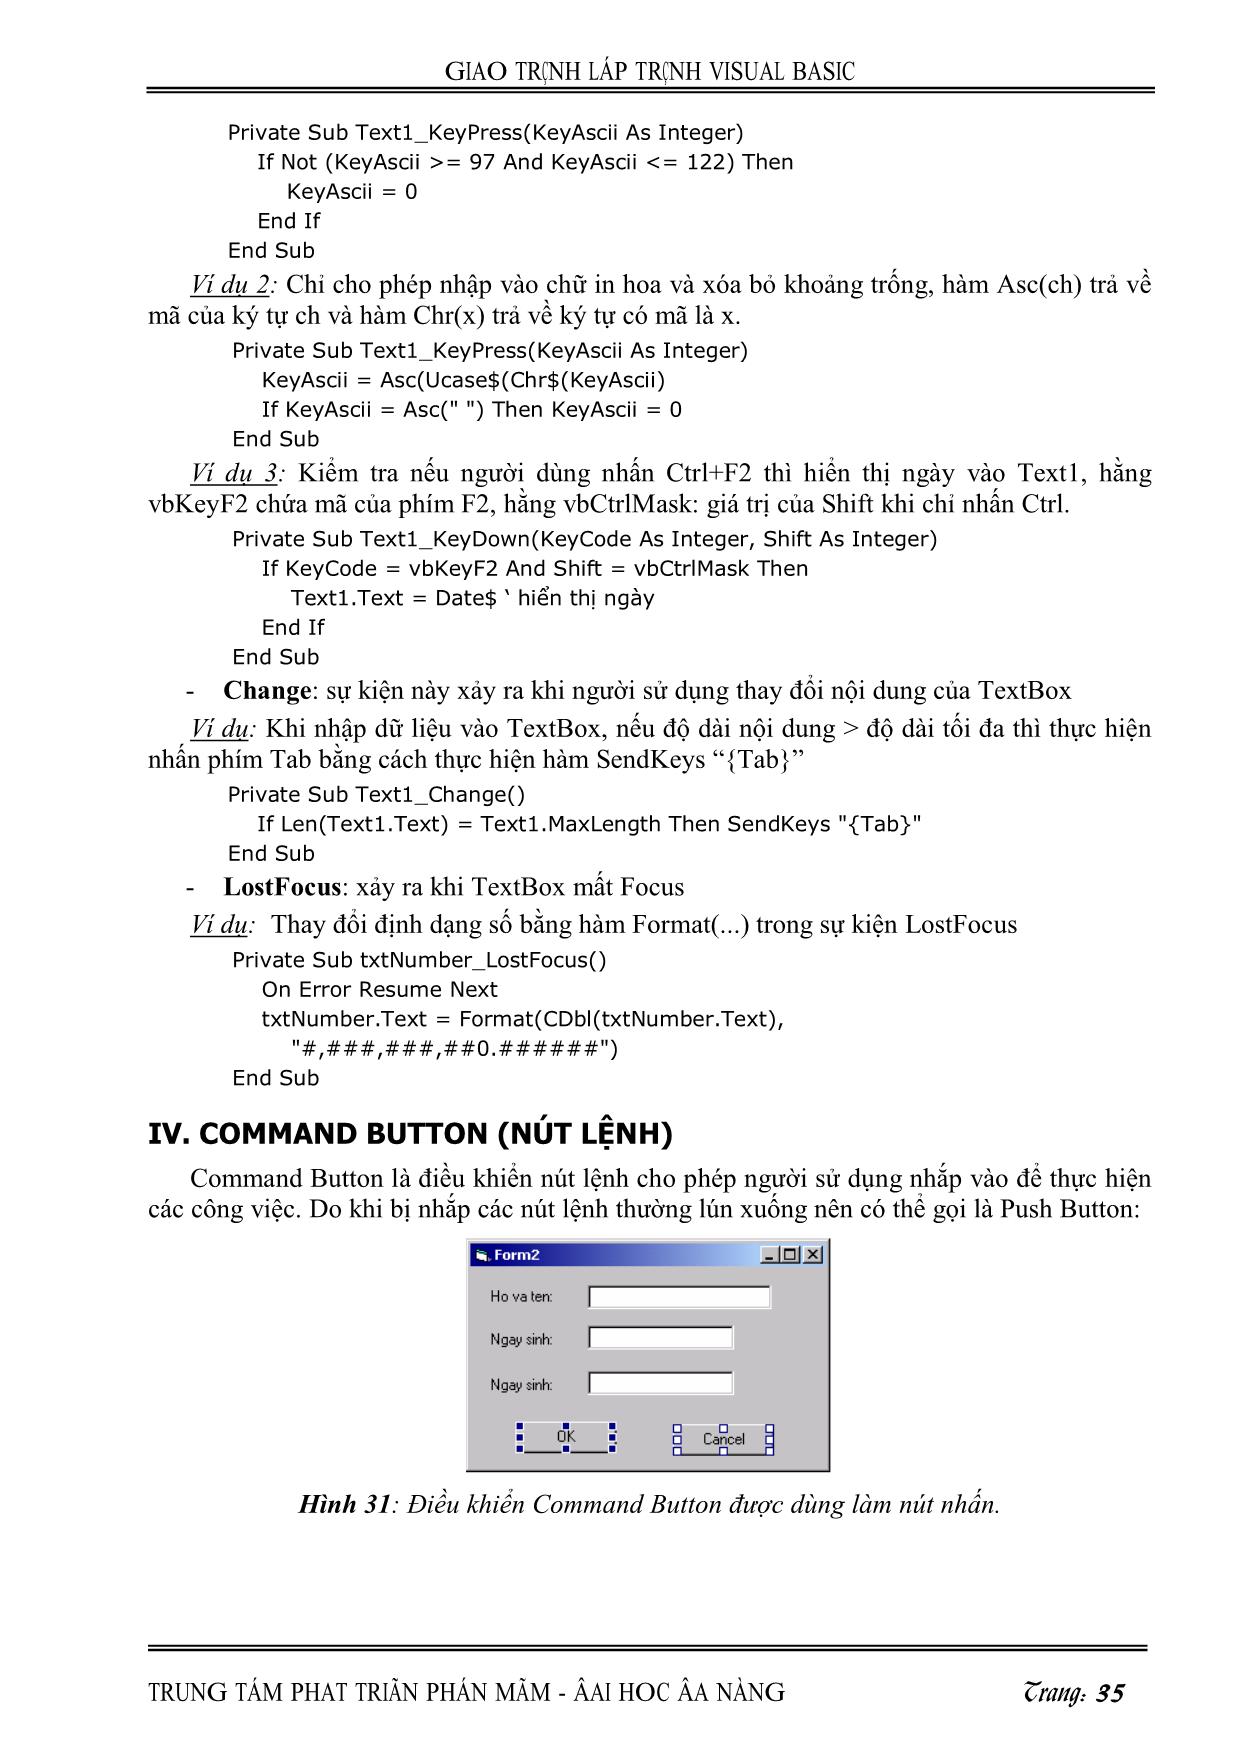 Giáo trình Lập trình Visual Basic (Phần 2) trang 5